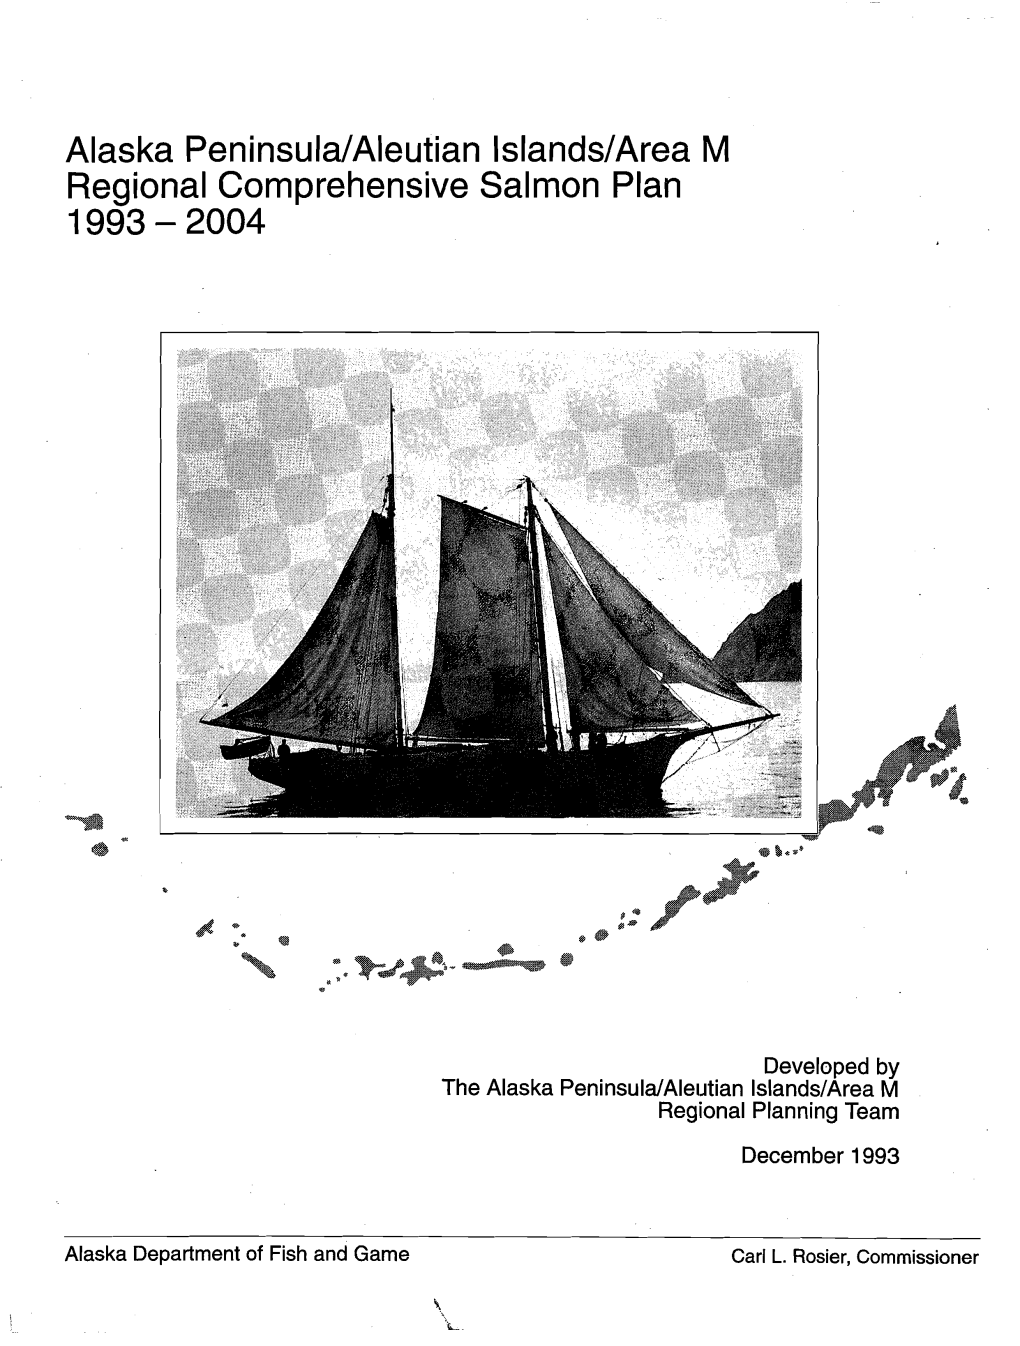 Alaska Peninsula/Aleutian Islands/Area M Regional Comprehensive Salmon Plan 1993 - 2004